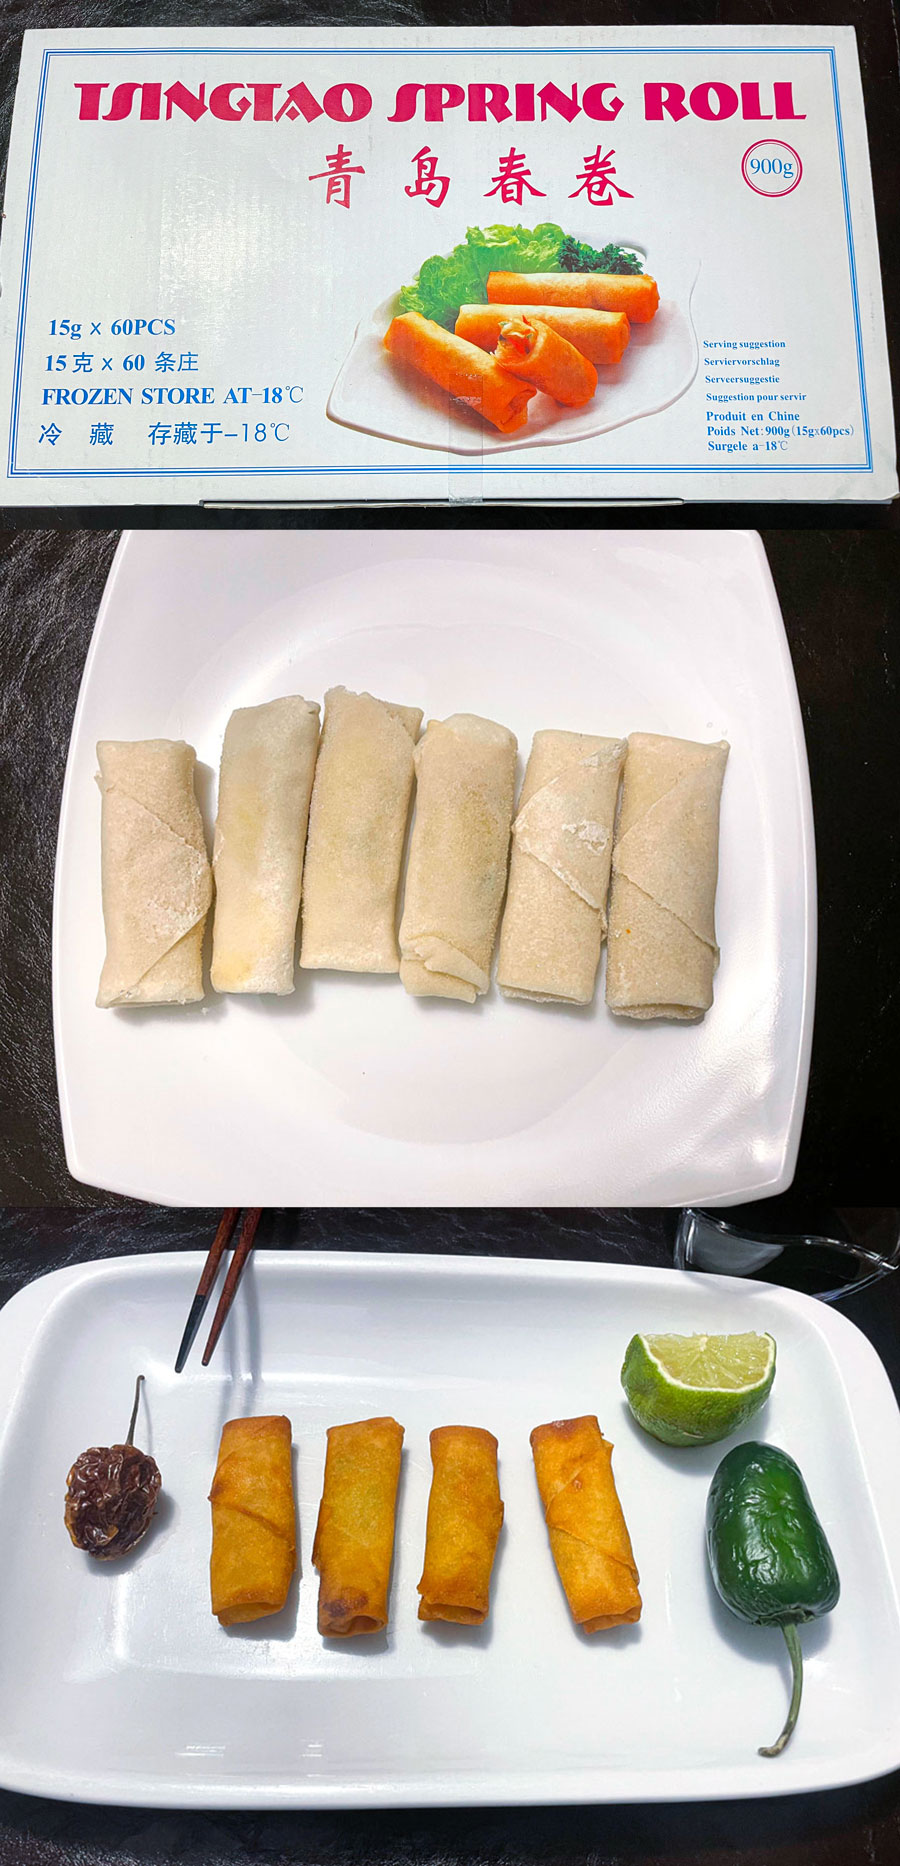 tsingtao-spring-rolls